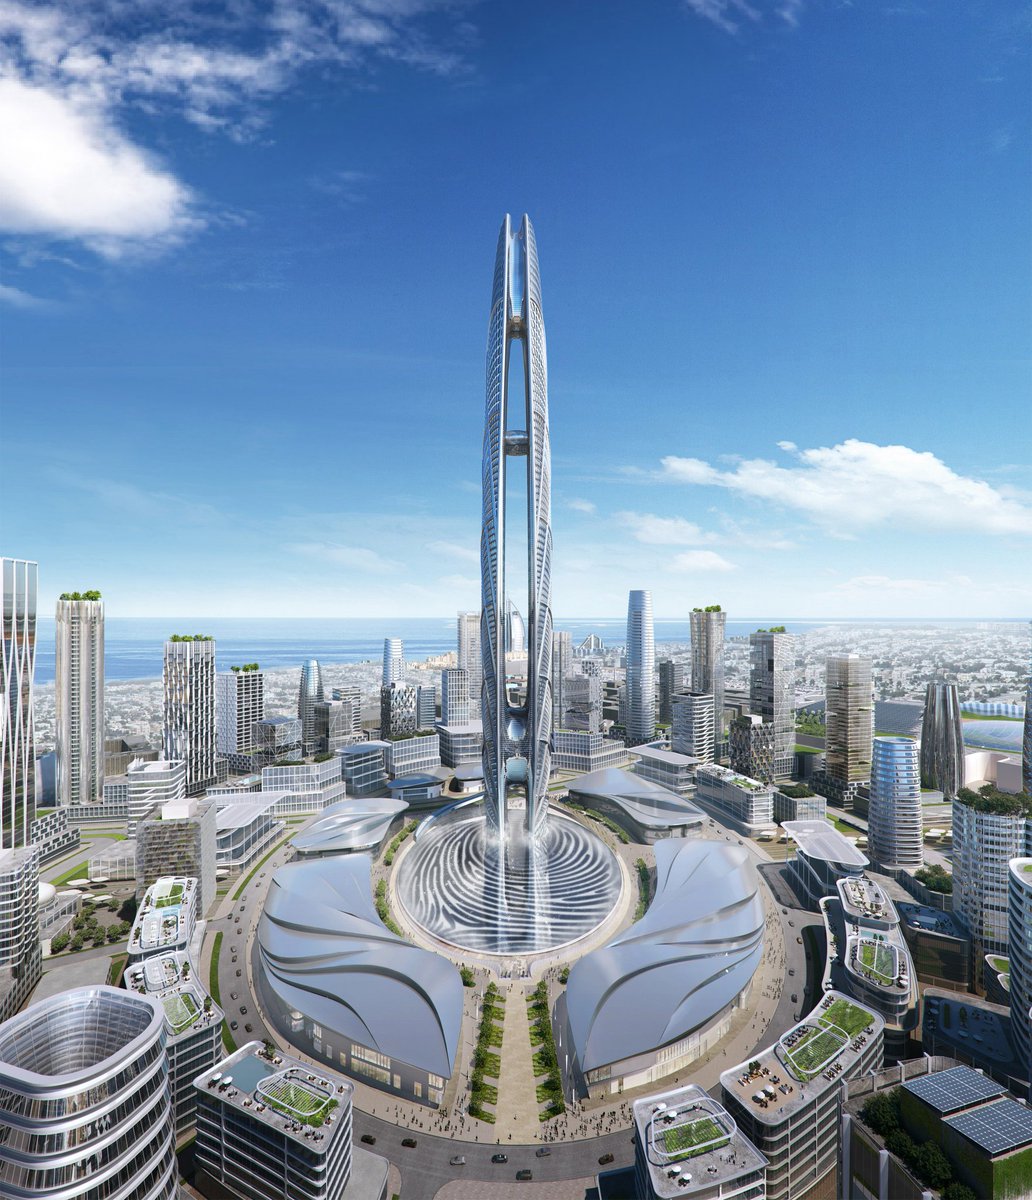 超高層ビル 都市開発研究所の中の人 きりぼうくん Somの設計した アラブ首長国連邦ドバイで計画されている高さ550mの Burj Jumeira 2つの超高層ビルが連結したようなデザイン が特徴的で 周囲を囲む噴水や水盤が不思議なデザイン Som Burj